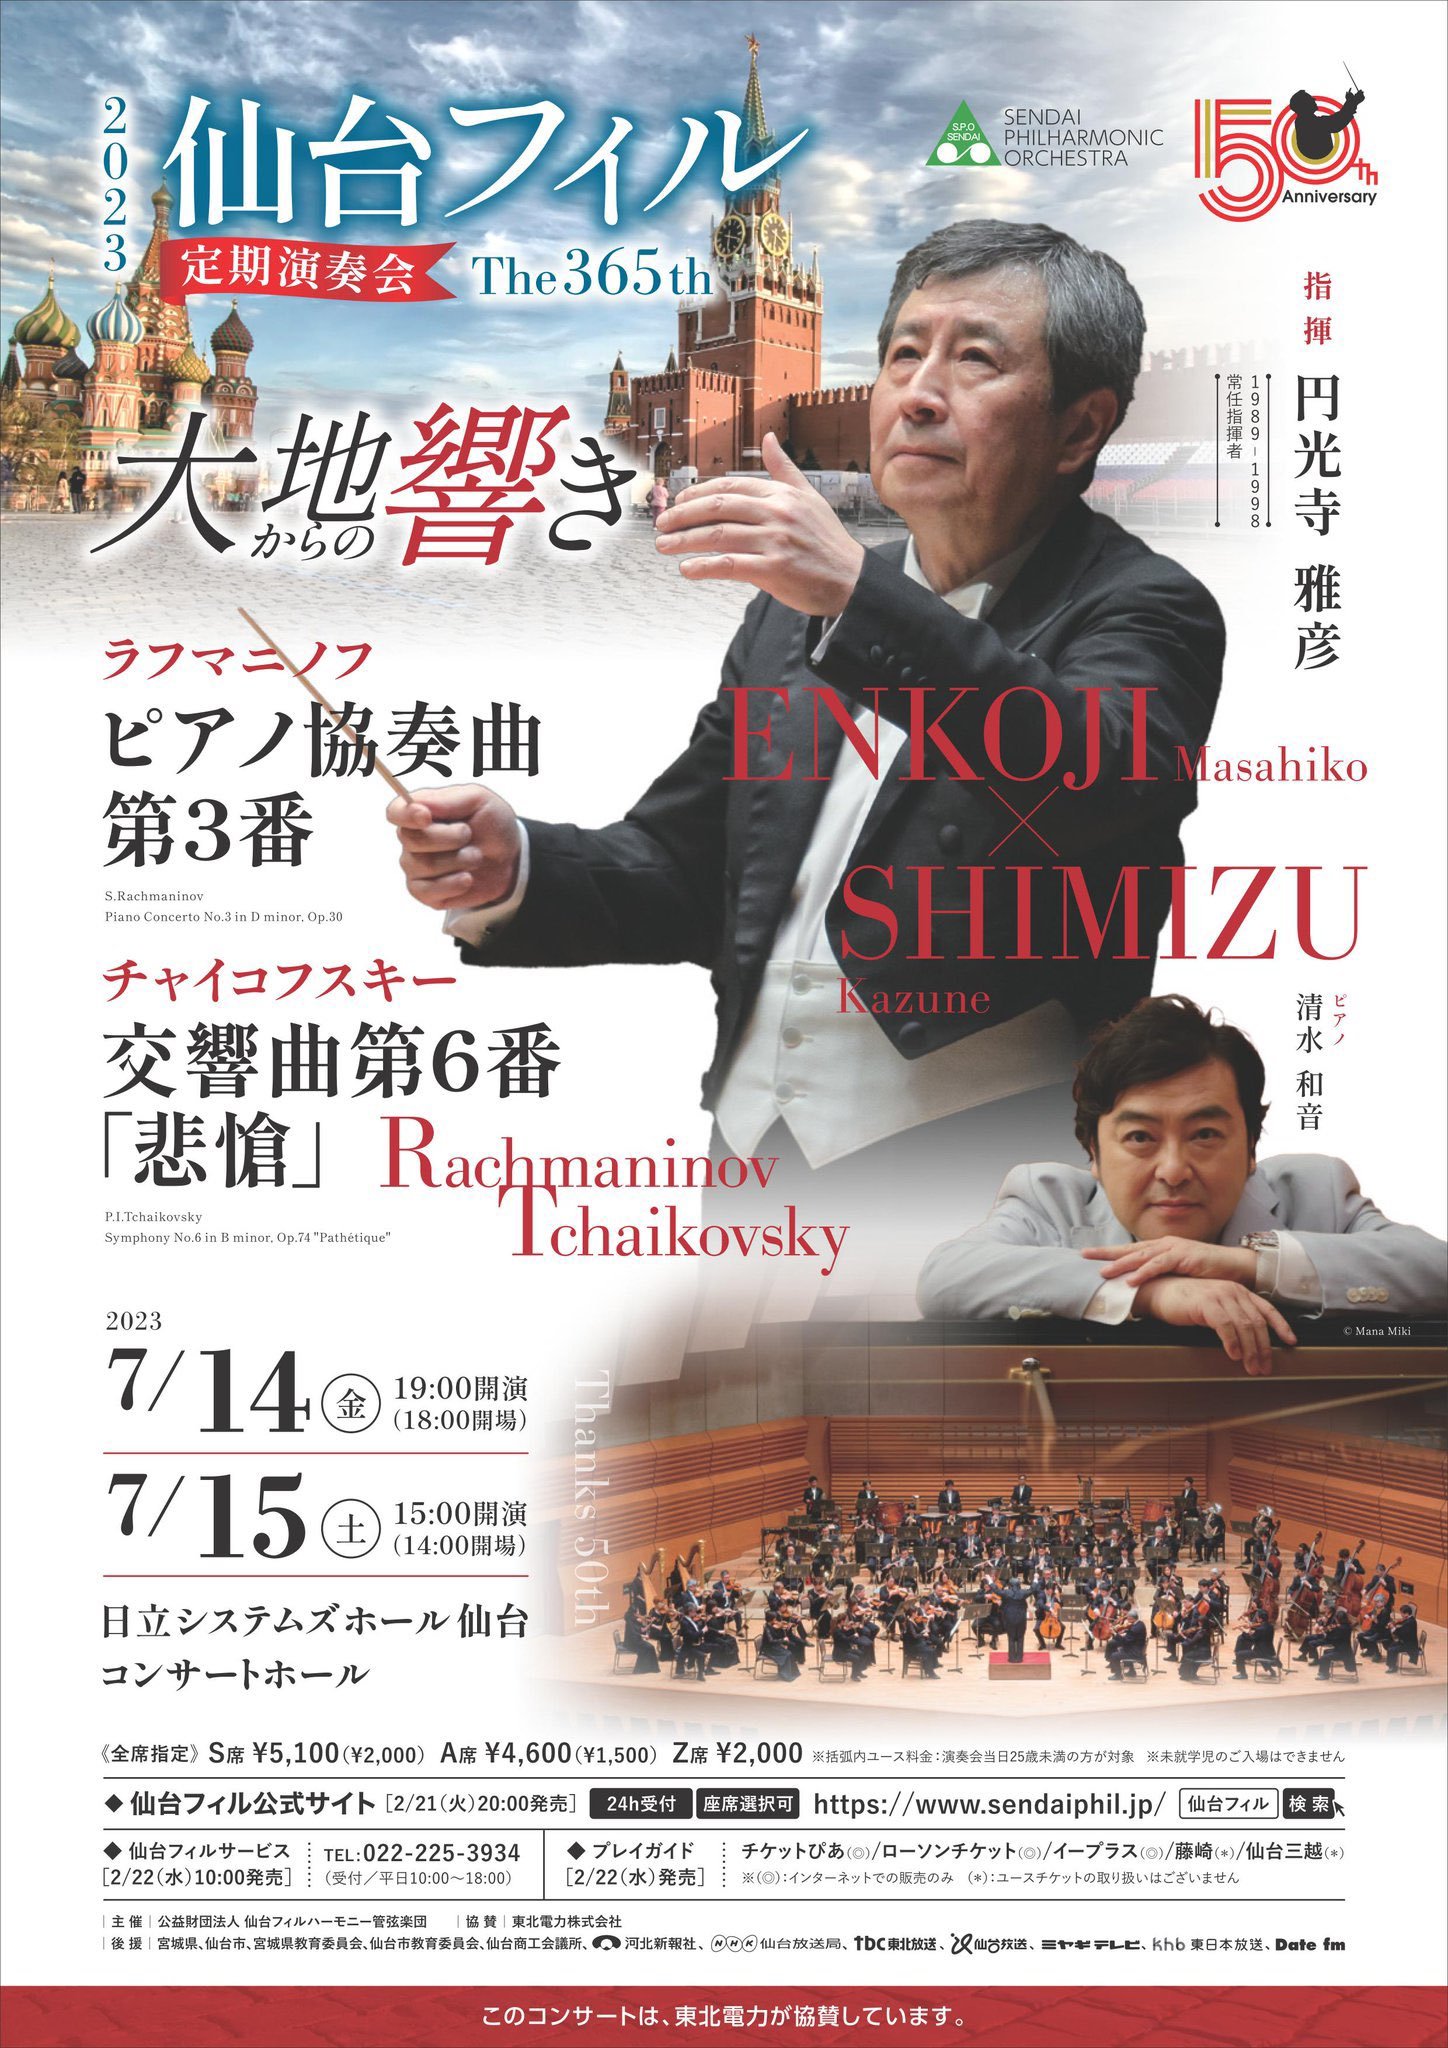 仙台フィルハーモニー管弦楽団第365回定期演奏会のフライヤー画像